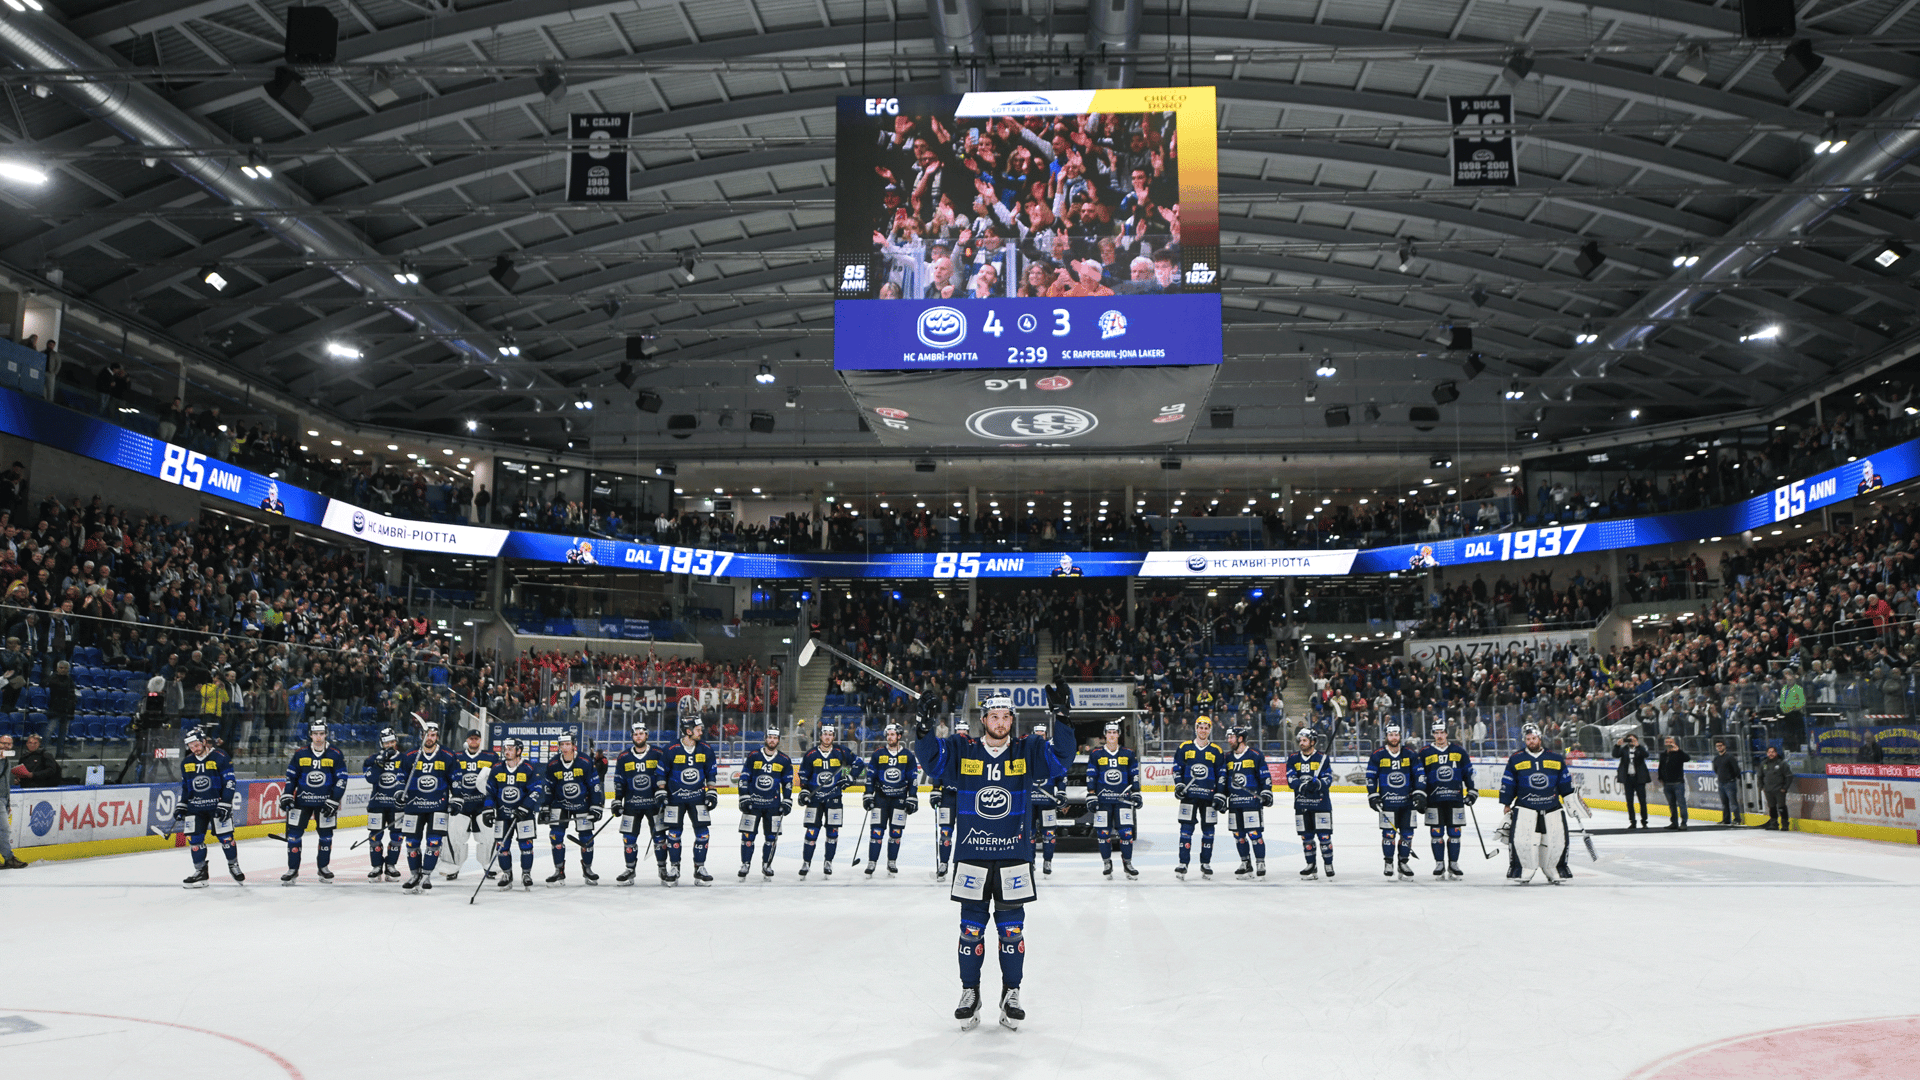 Eishockey Spieler stehen auf Eis vor Spielbeginn in Arena